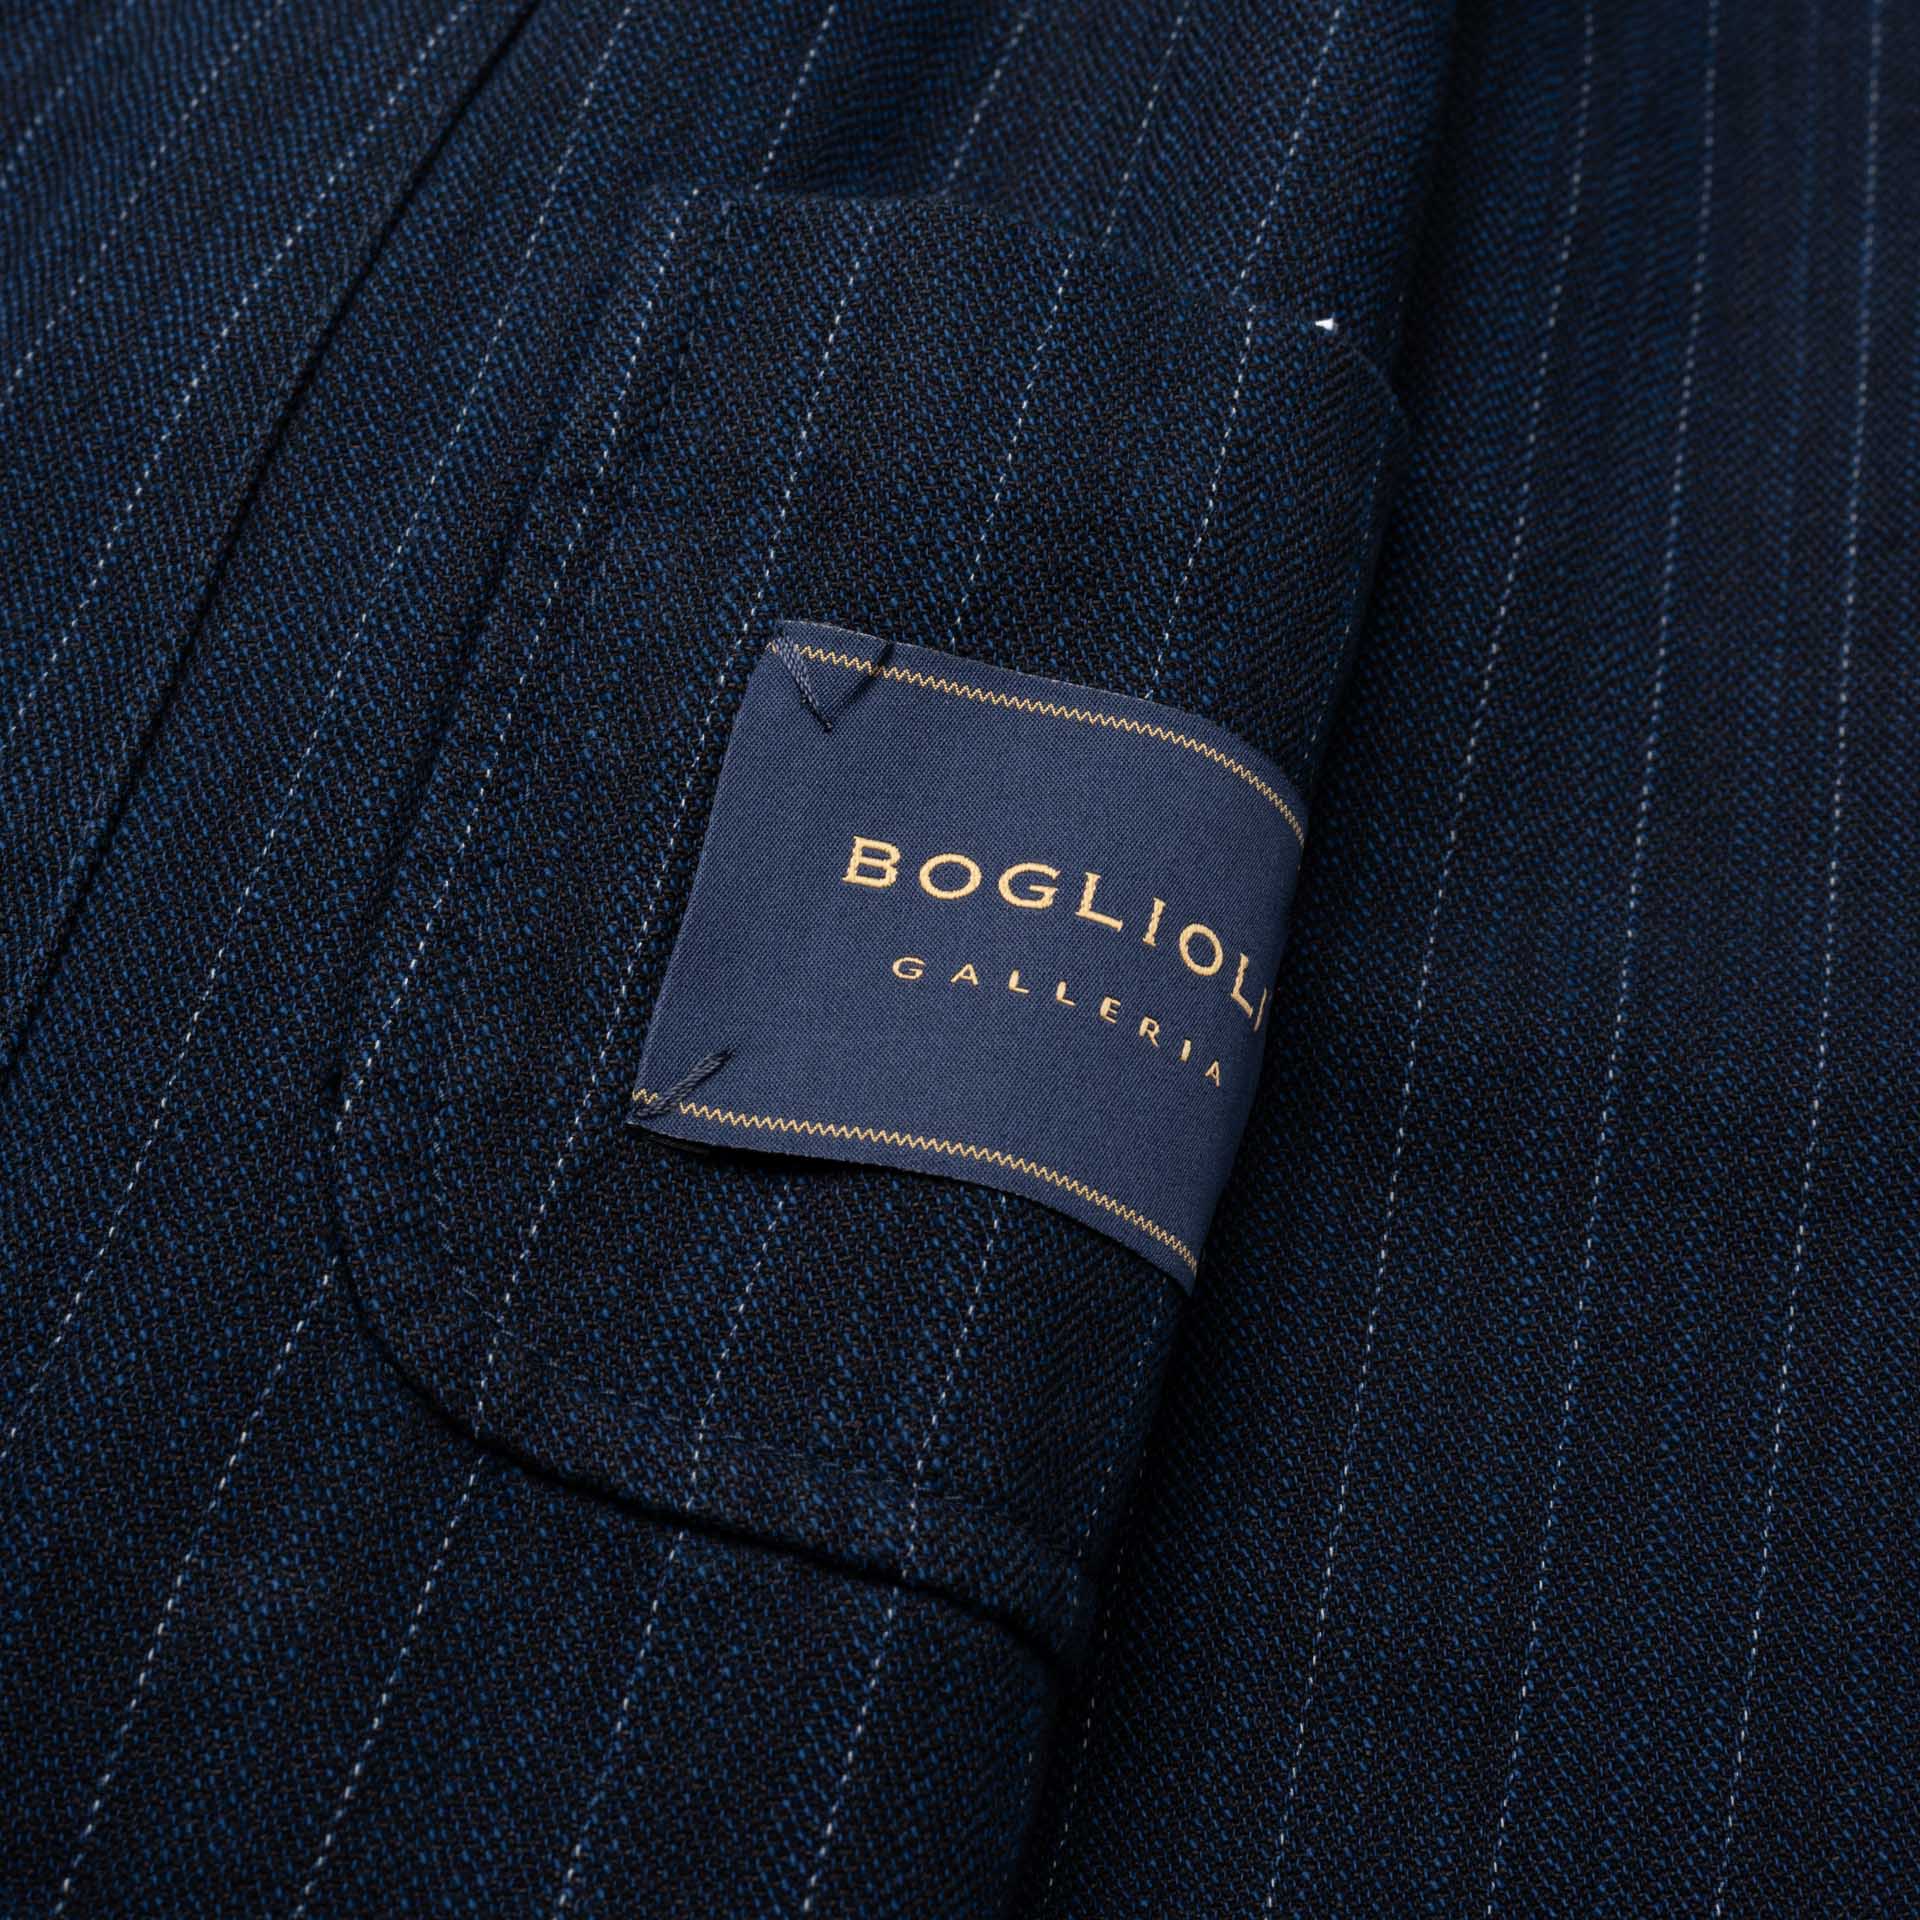 BOGLIOLI Galleria 74 Blue Striped Cotton-Paper 4 Button Unlined Jacket 48 NEW 38 BOGLIOLI